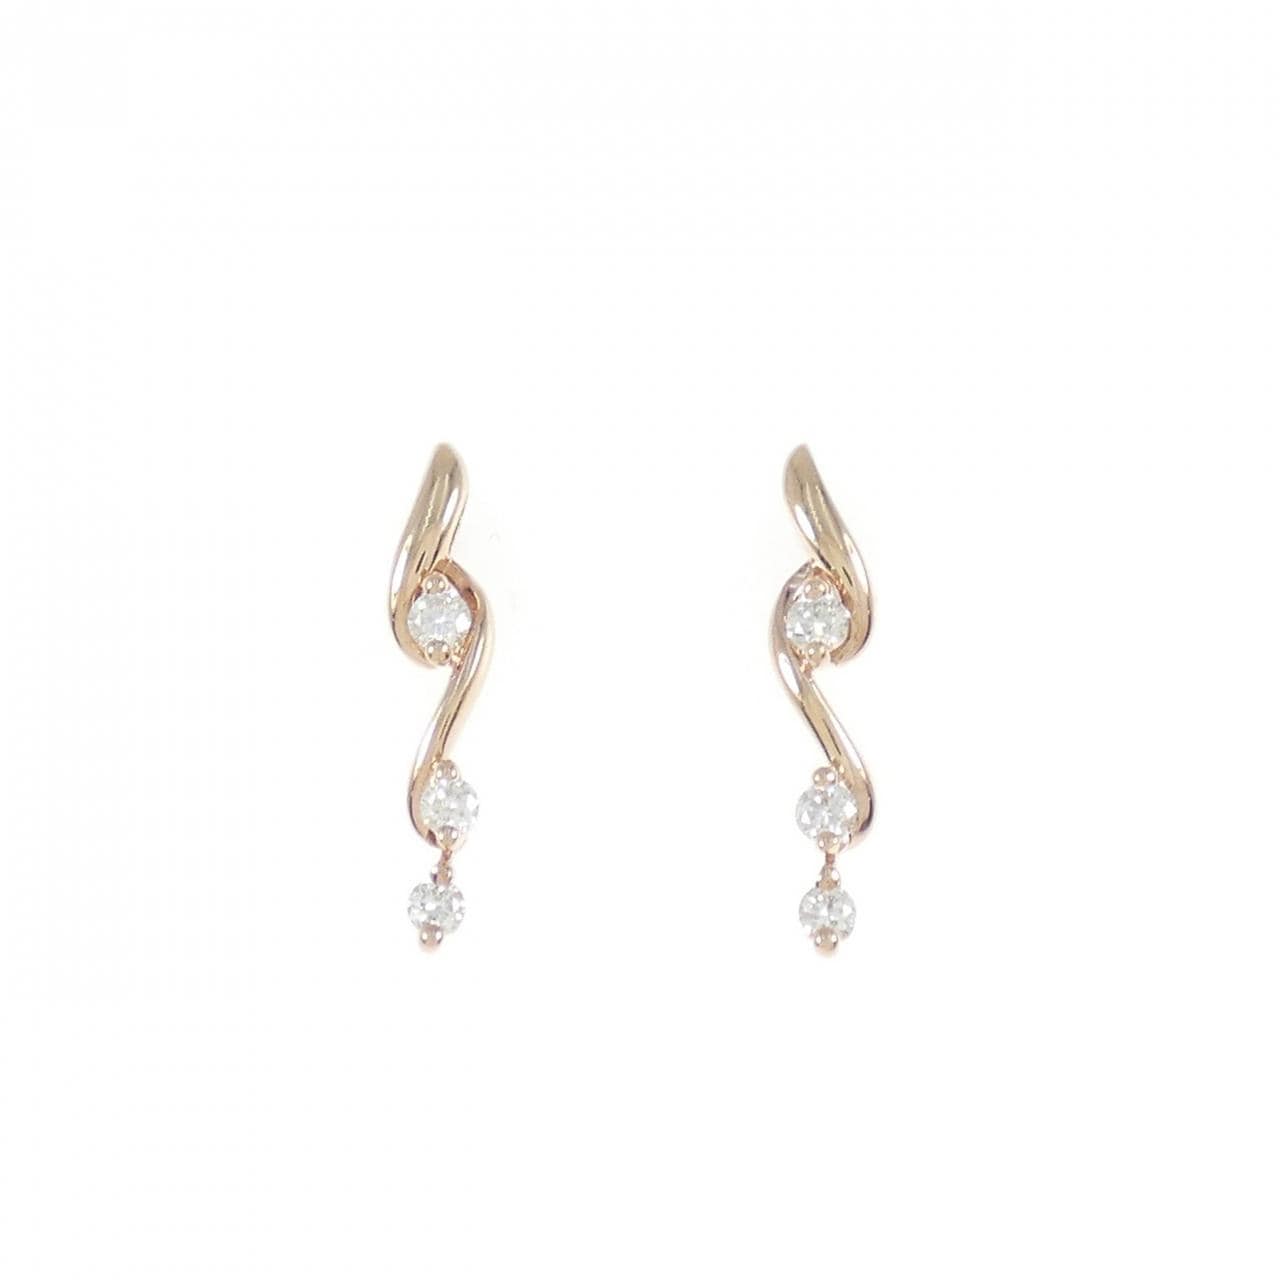 K18PG Diamond earrings 0.30CT